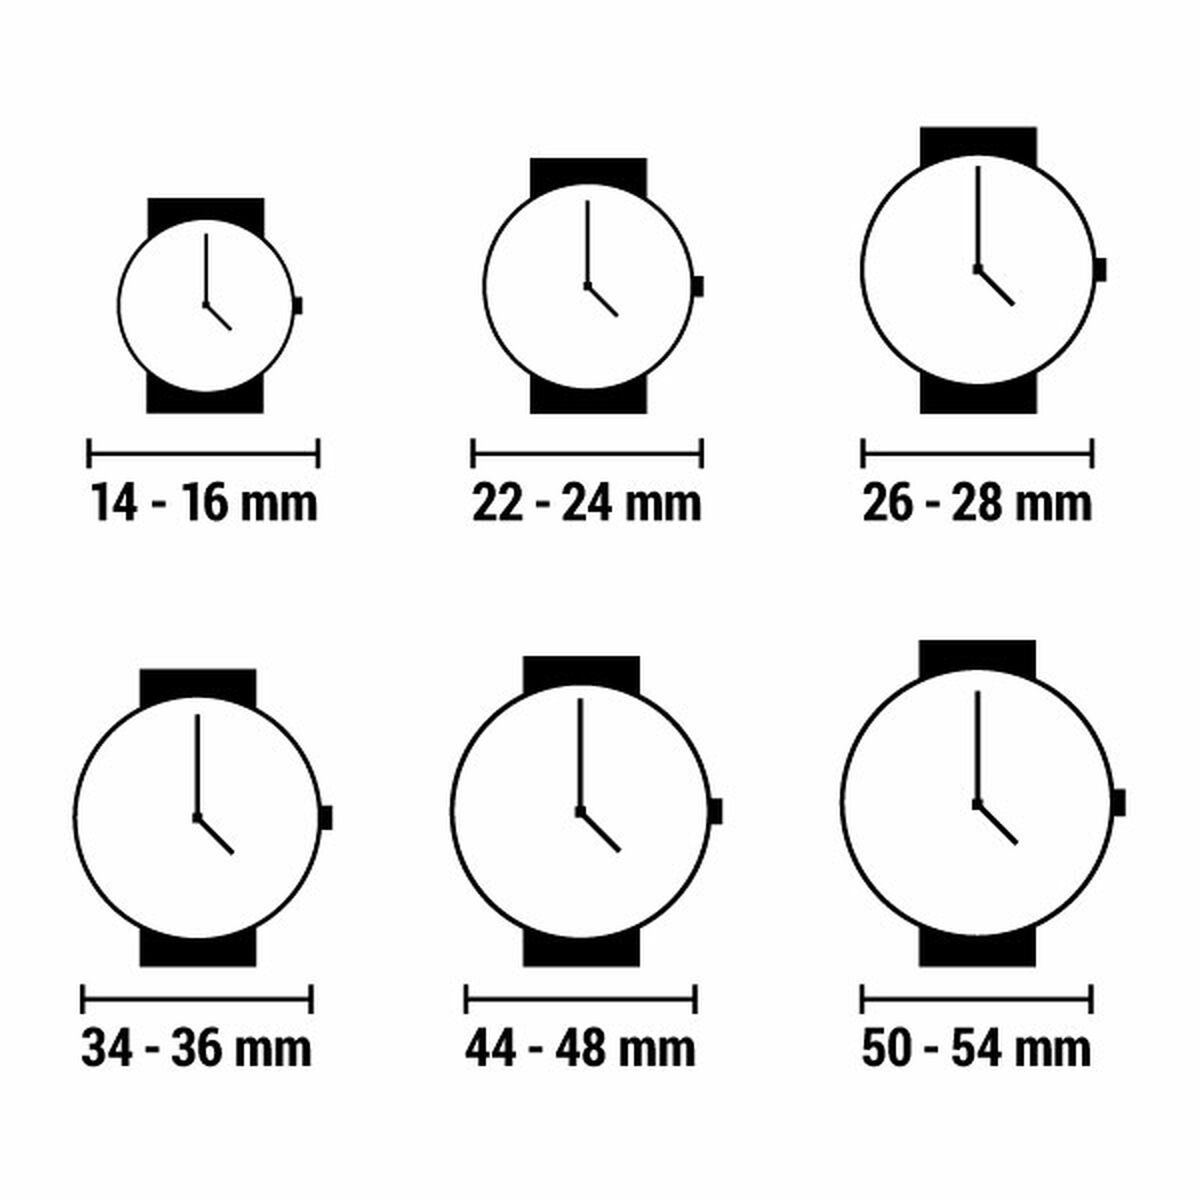 Kaufe Unisex-Uhr MAM 675 (Ø 33 mm) bei AWK Flagship um € 76.00